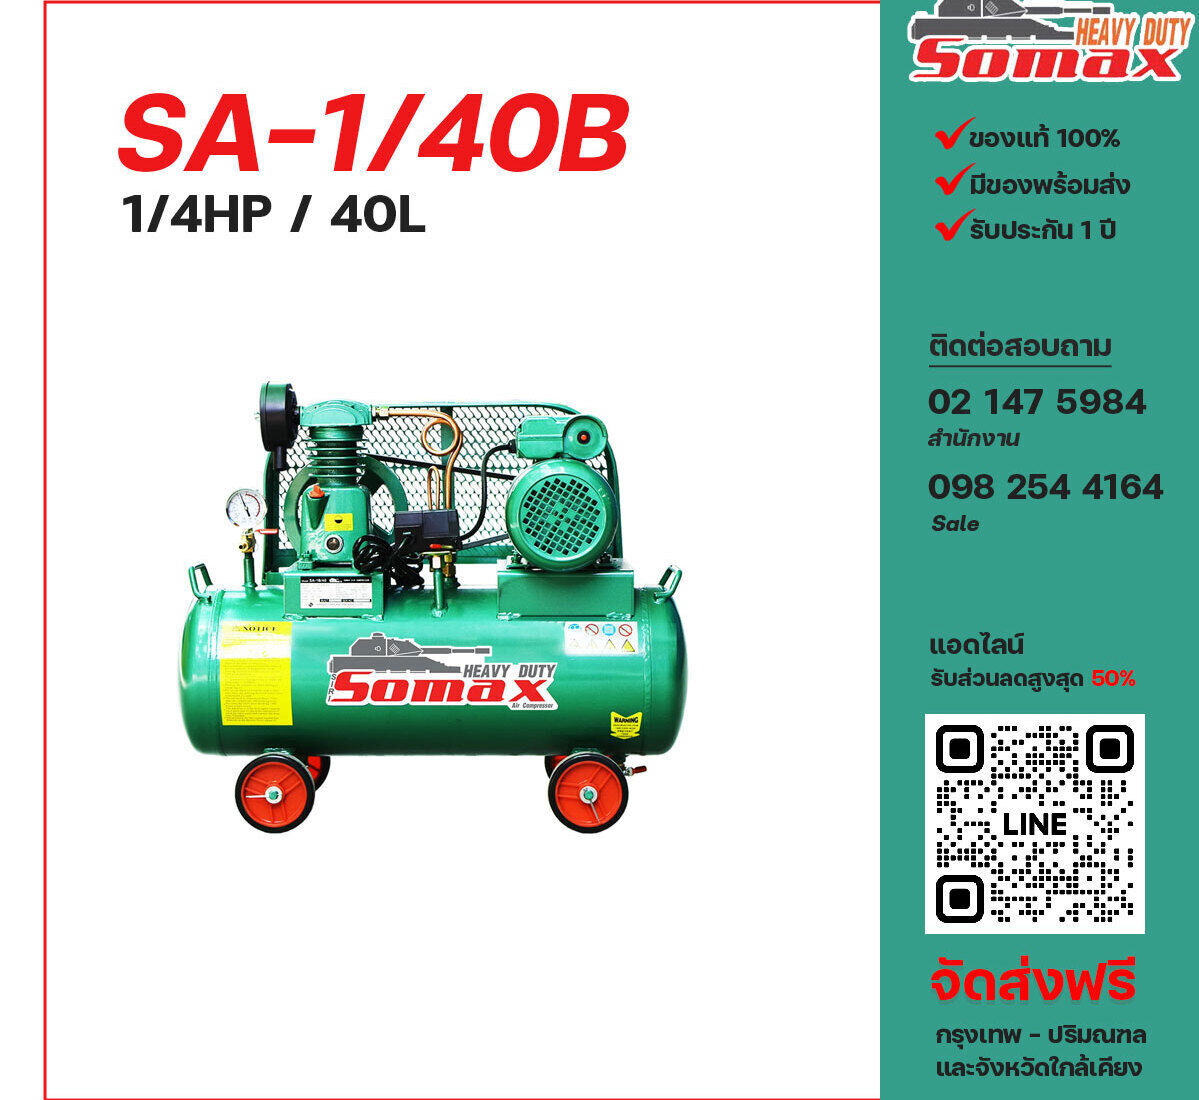 ปั๊มลมโซแม็กซ์ SOMAX SA-1/40B 220V ปั๊มลมลูกสูบ ขนาด 1 สูบ 1/4 แรงม้า 40 ลิตร SOMAX พร้อมมอเตอร์ ไฟ 220V ส่งฟรี กรุงเทพฯ-ปริมณฑล รับประกัน 1 ปี